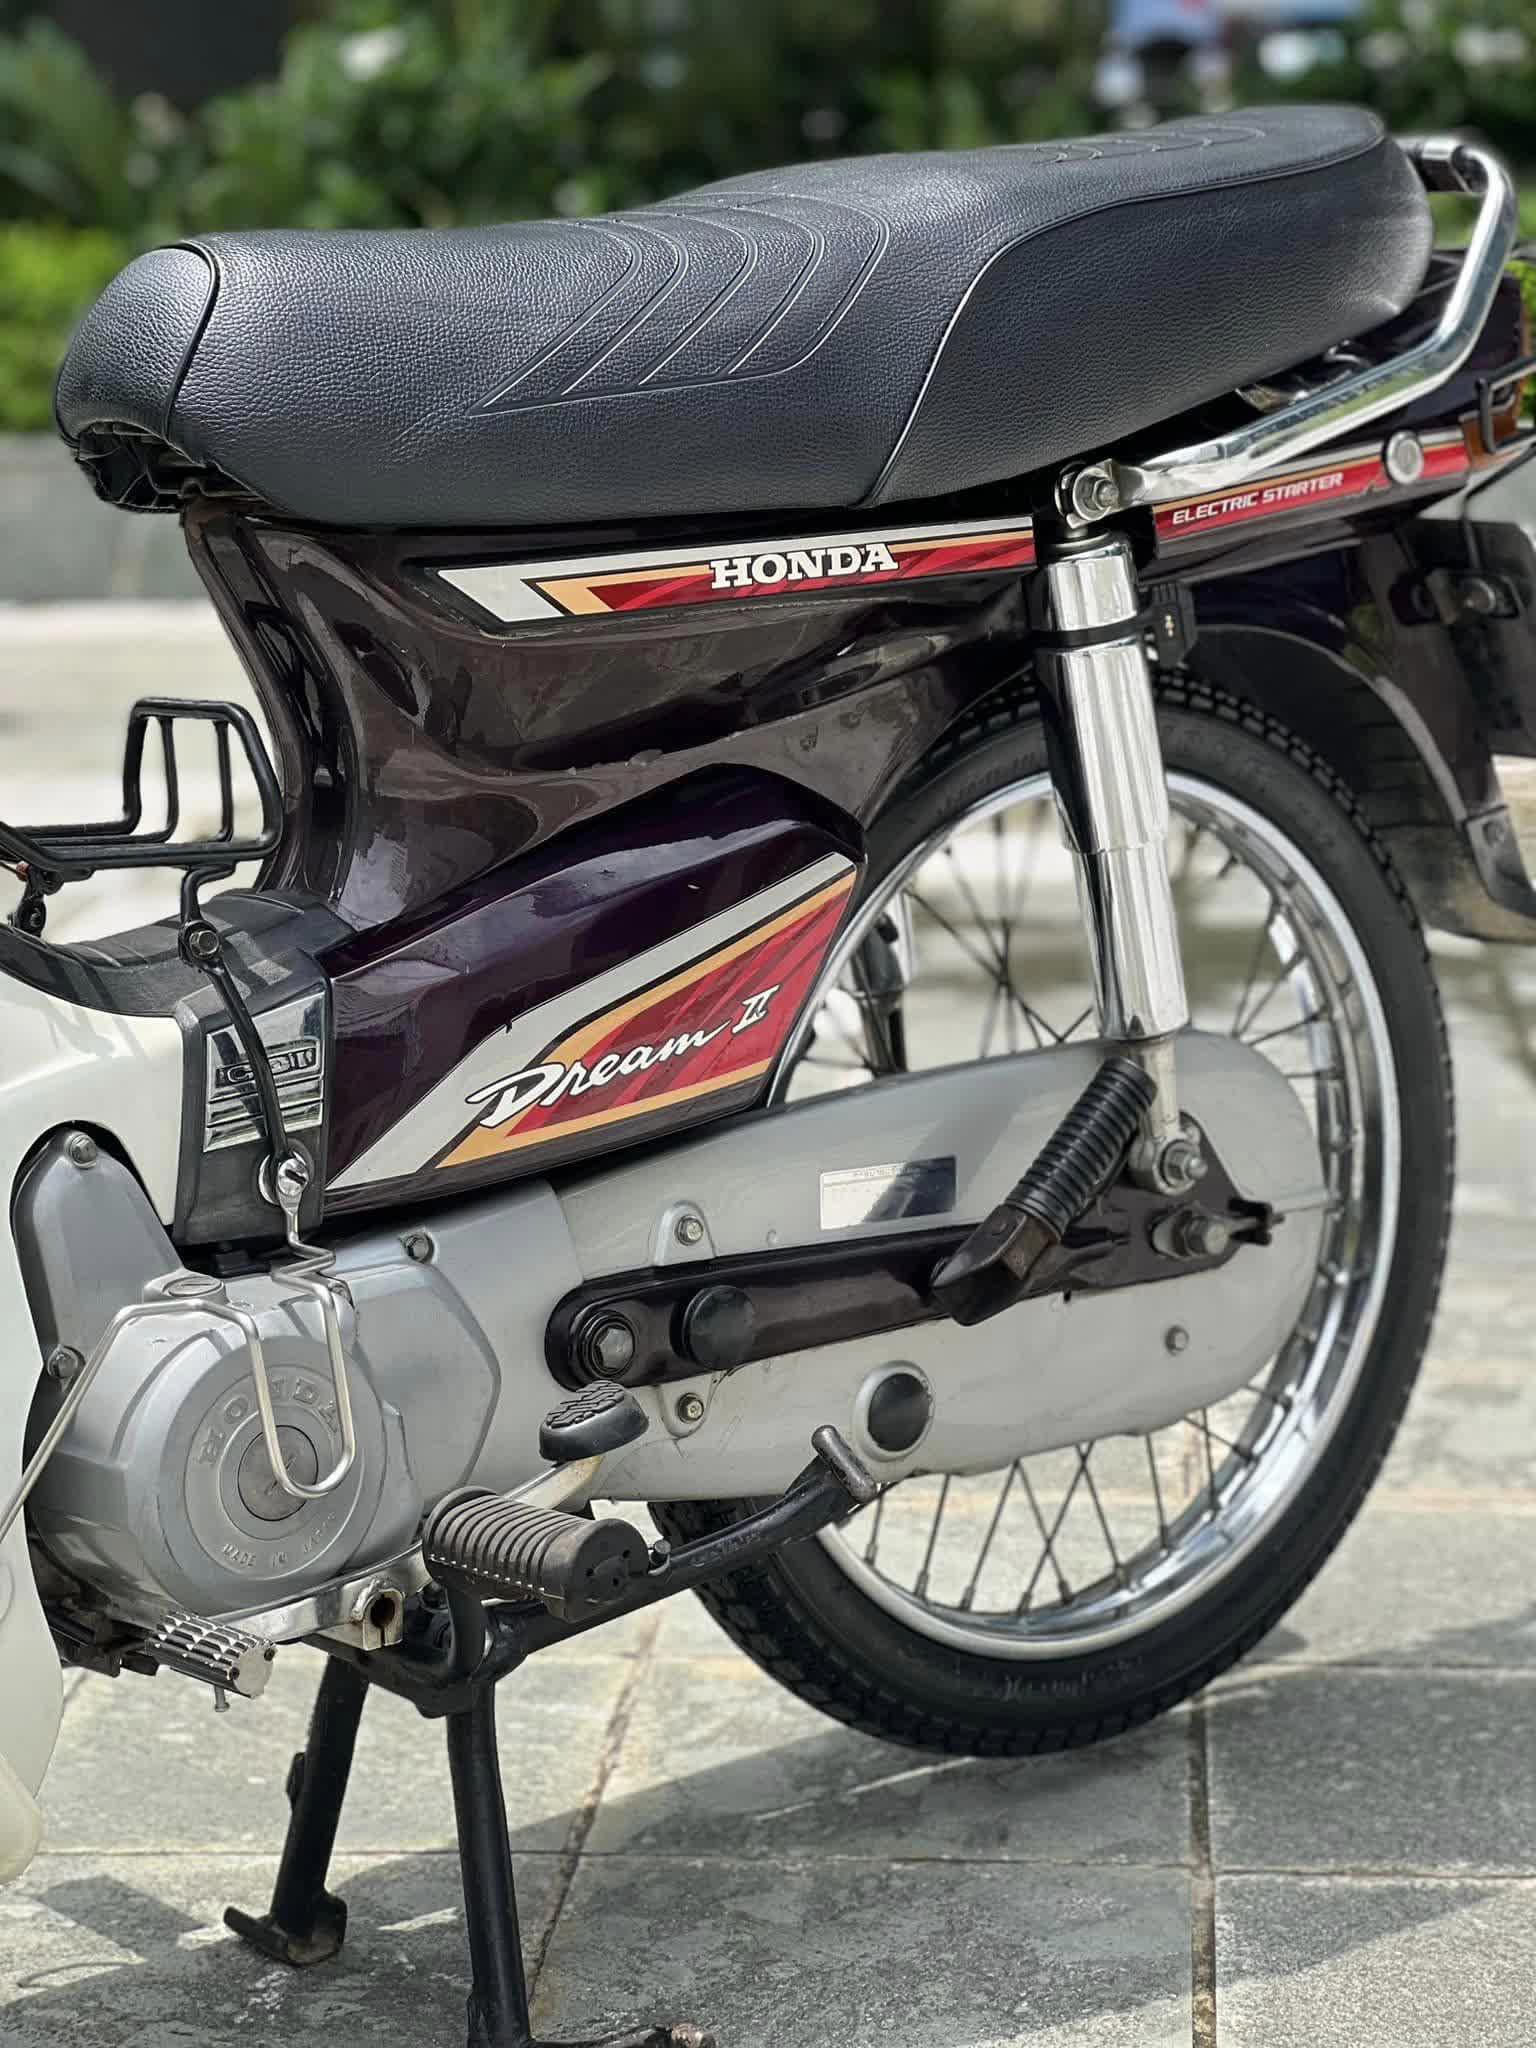 Honda Dream Thái đời 2002 được bán với giá cao gấp 3 lần SH 150 2019